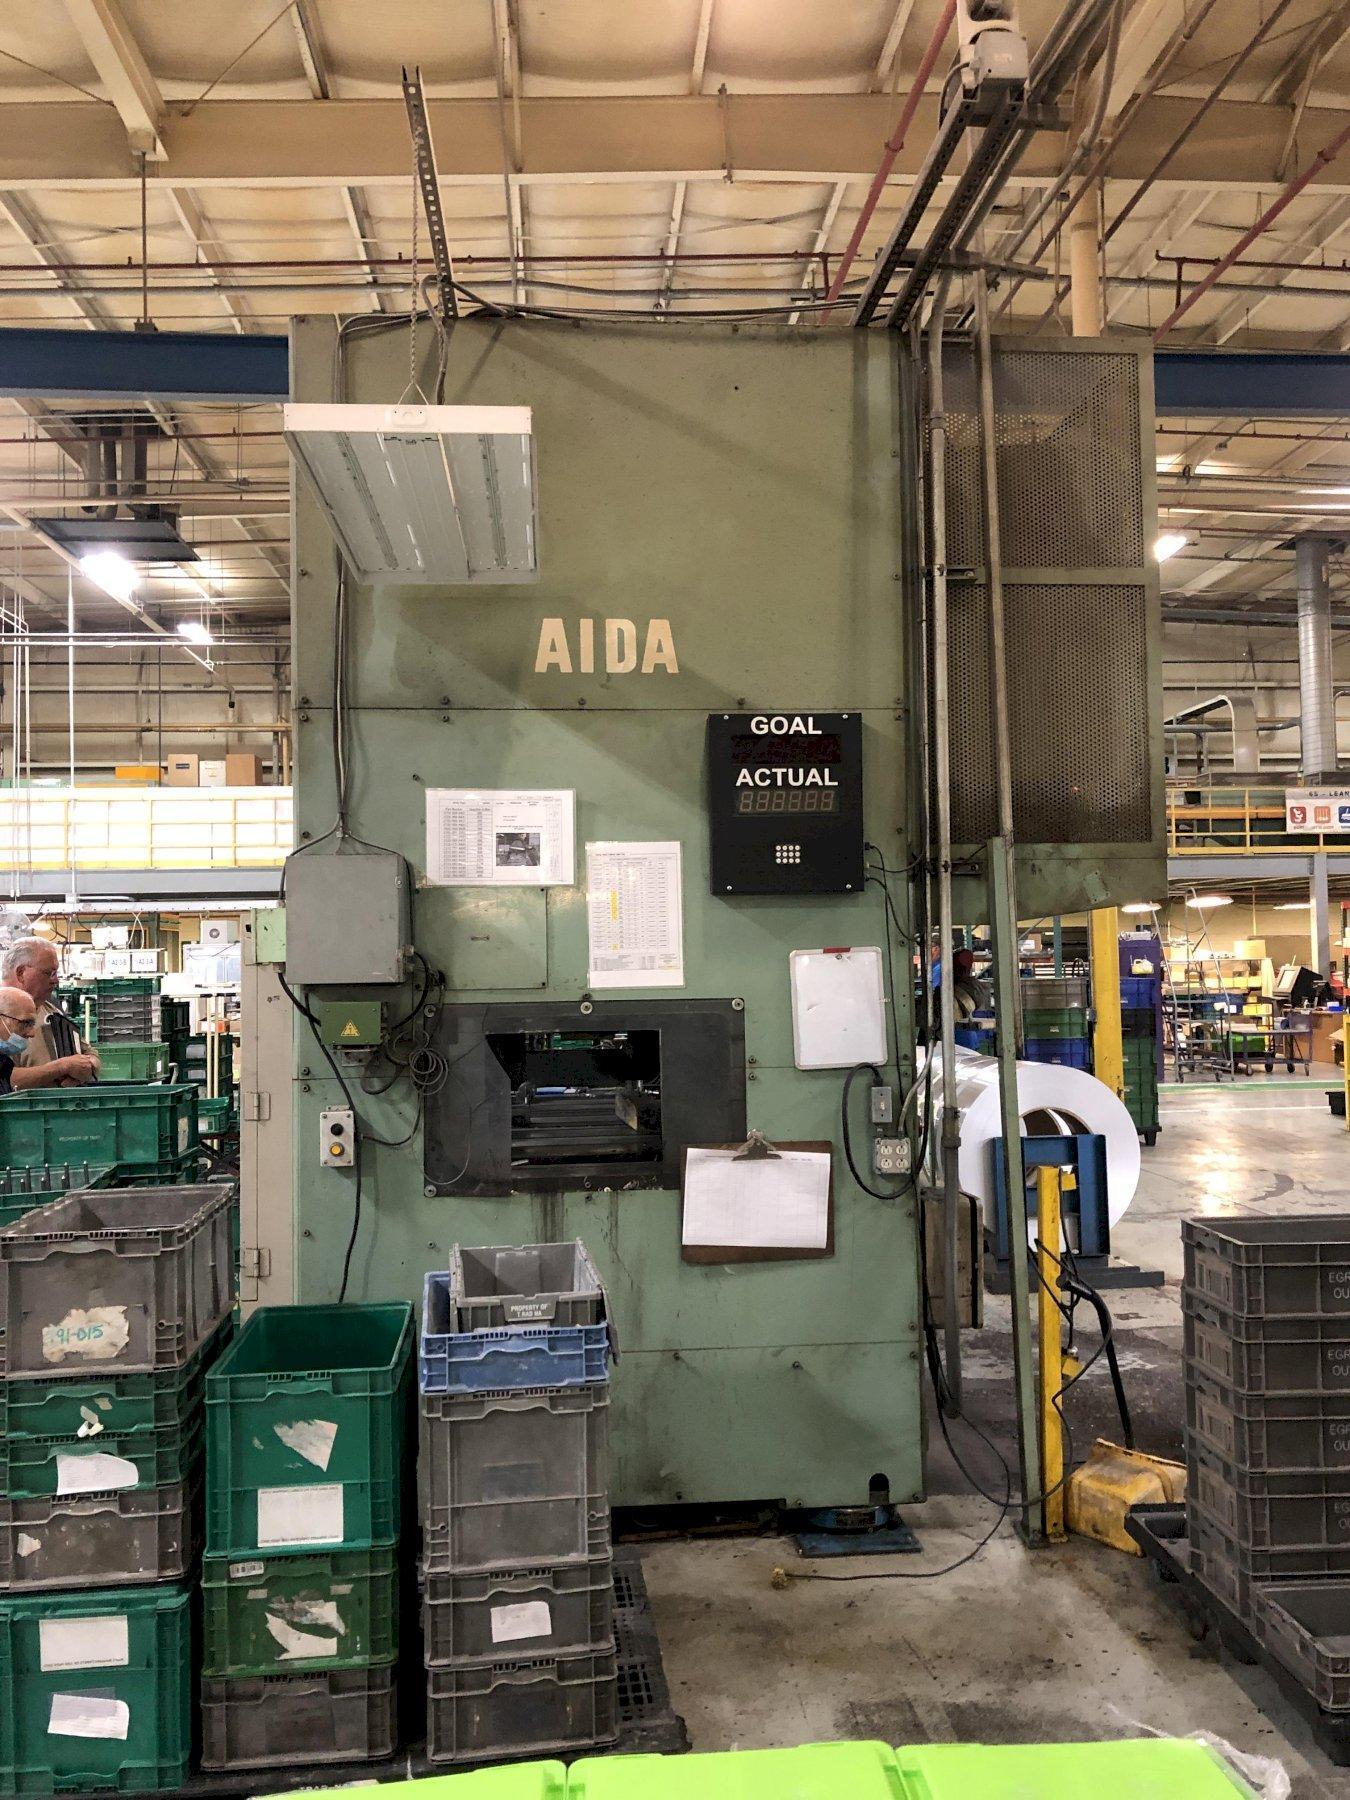 1999 AIDA NCS-200 Press Room, Gap Frame | Gulf Coast Machinery, LLC